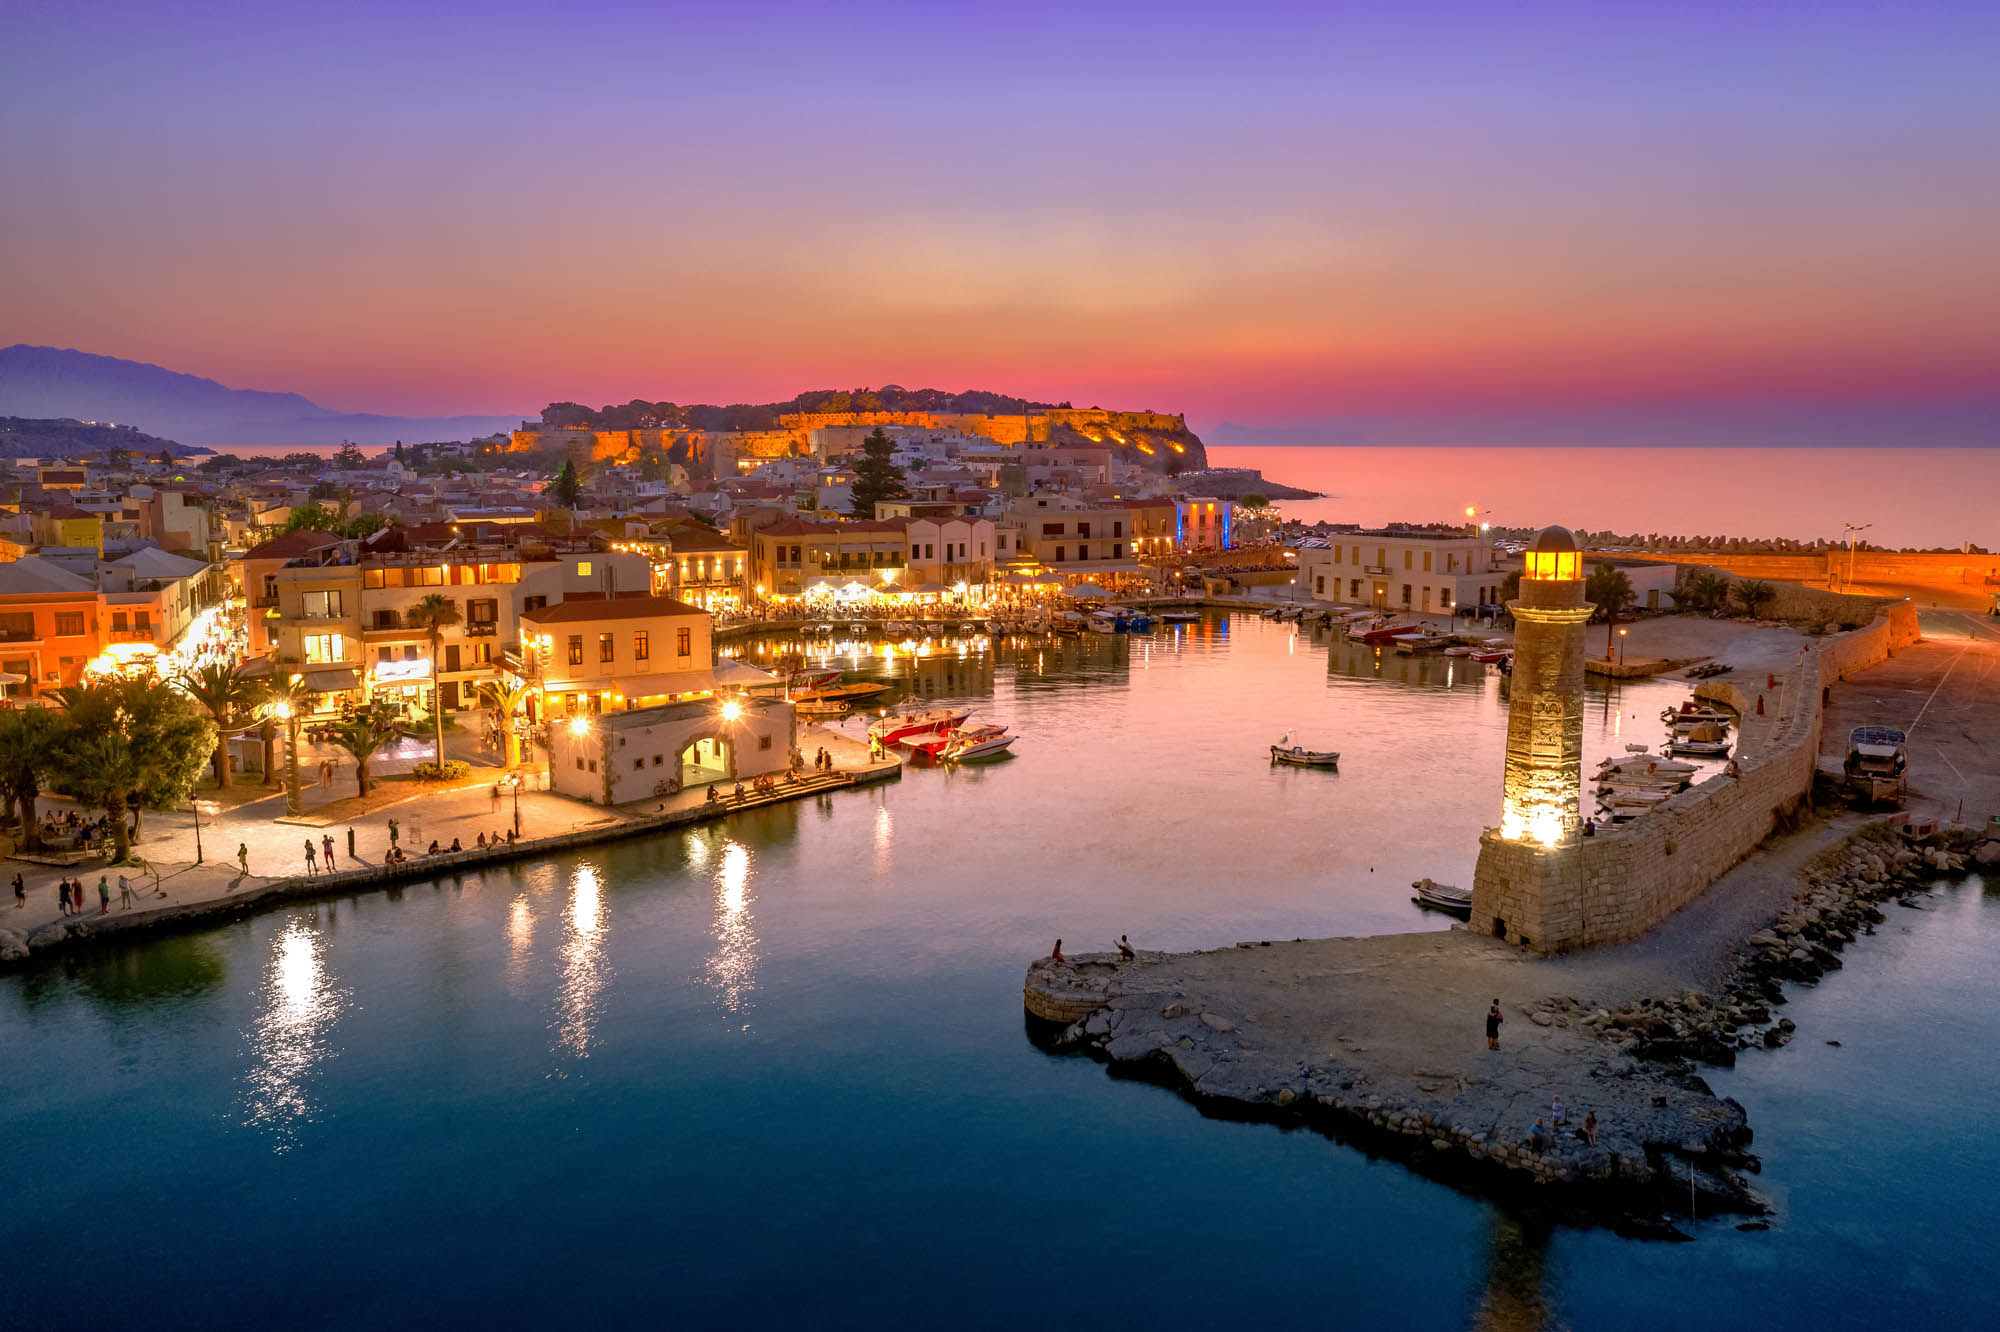 Zabytkowy wenecki port w Rethymno na Krecie oświetlony nocą